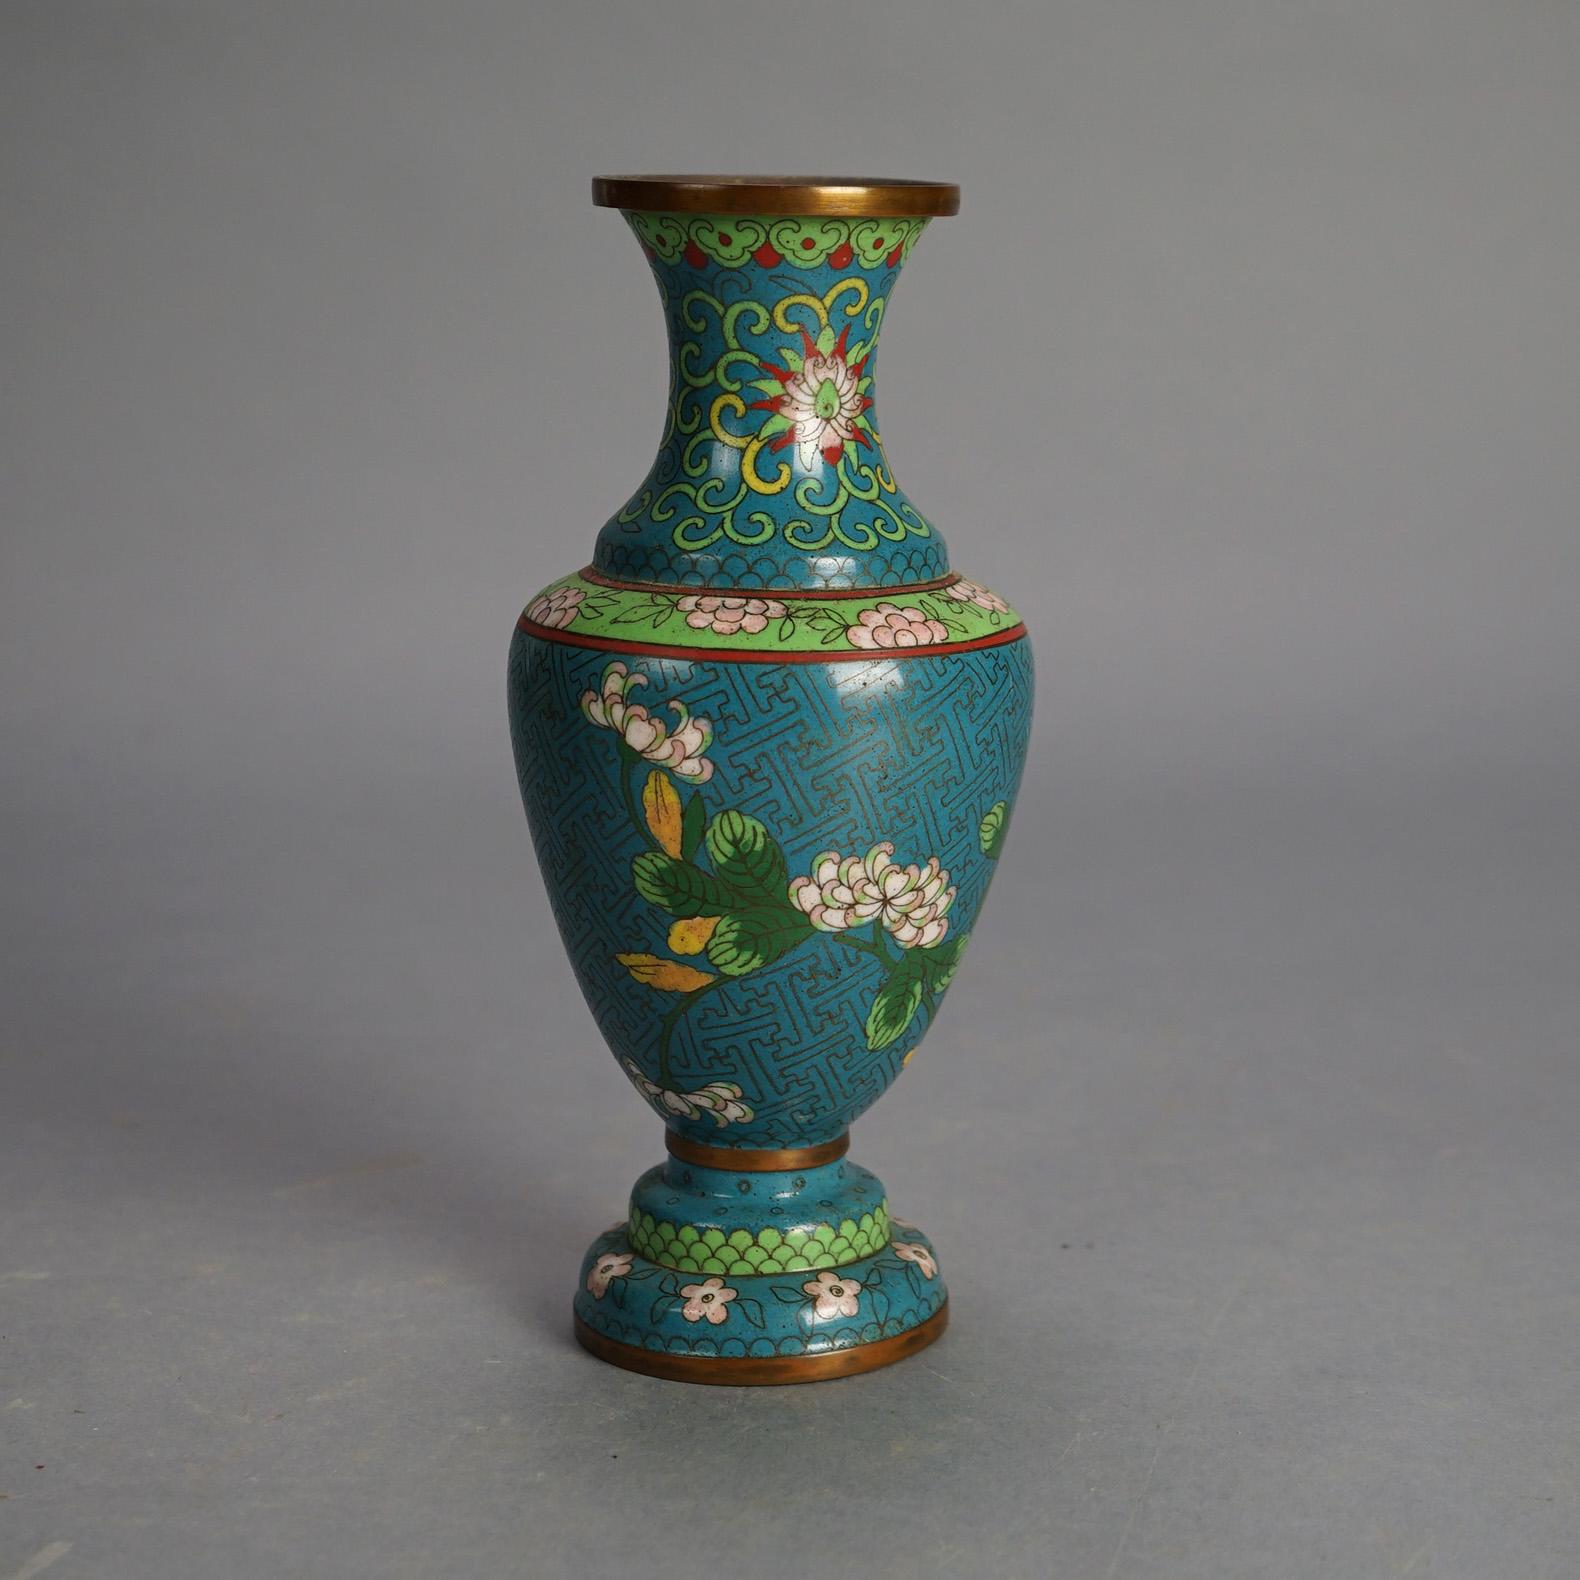 Antike chinesische Cloisonné-Vasen, emailliert, um 1920

Maße - 9 